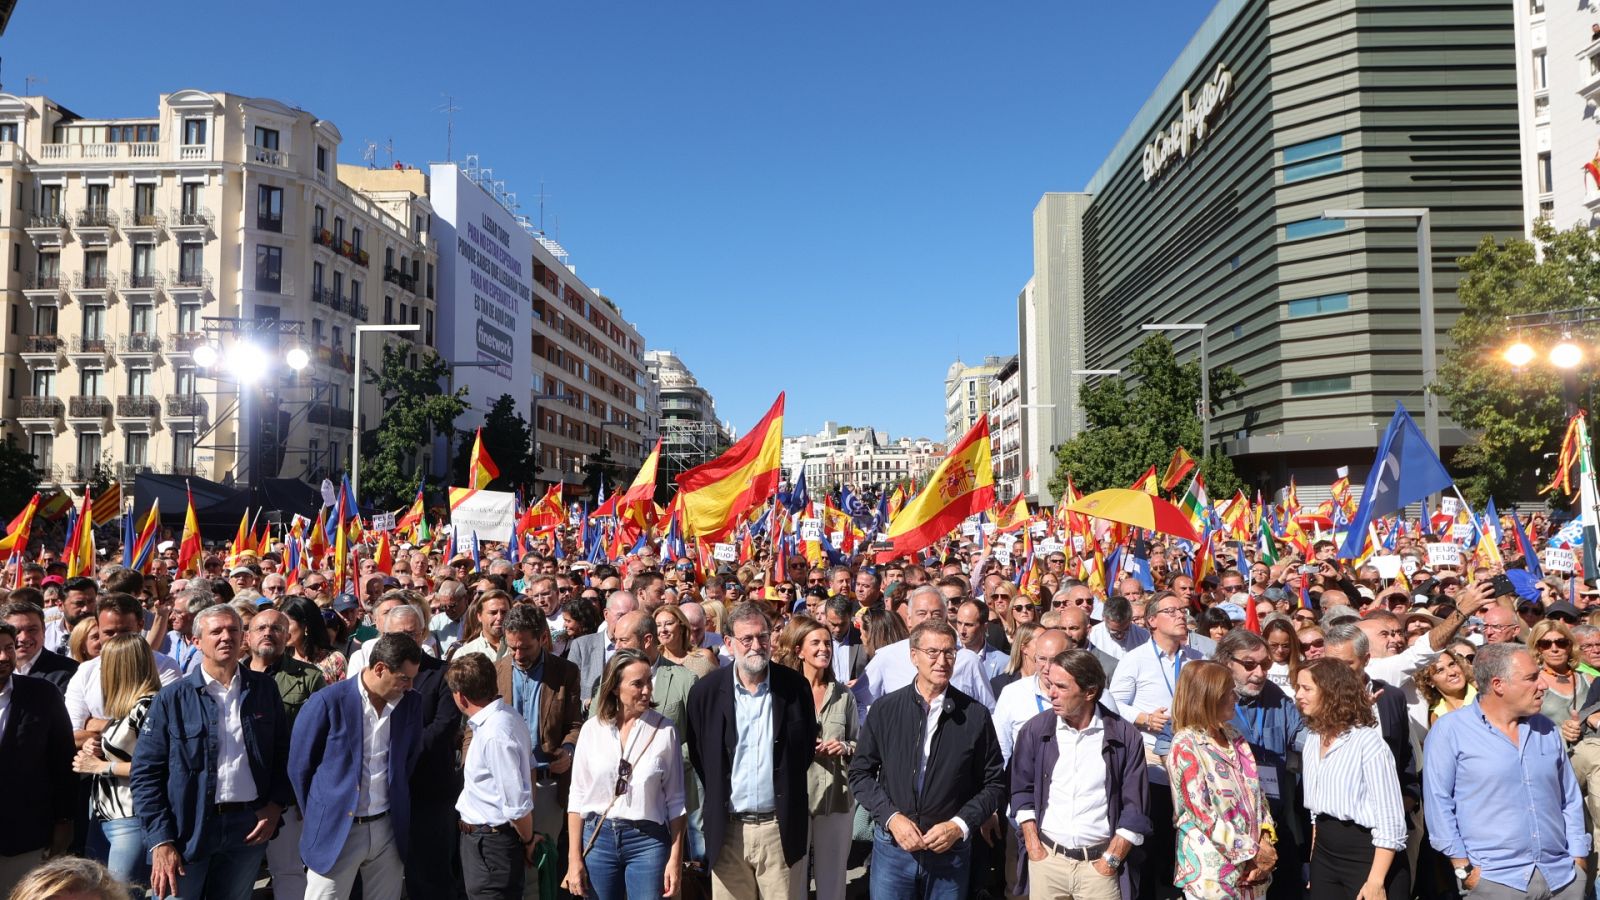 Feijóo dice que defenderá la igualdad de los españoles "cueste lo que cueste"